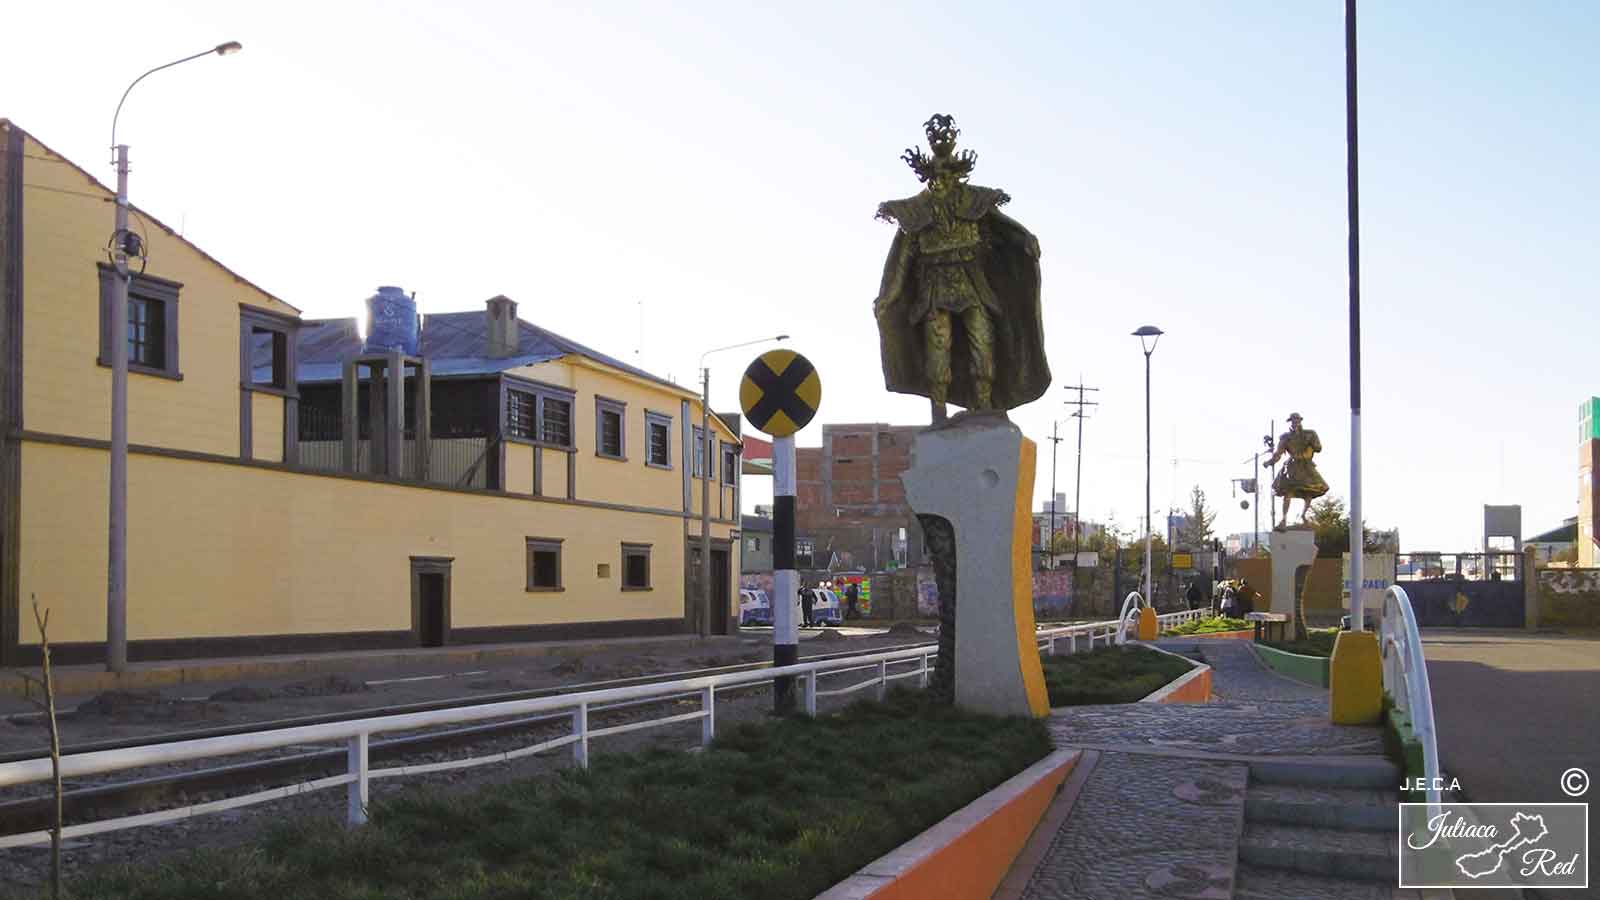 Avenida del folclore, Juliaca